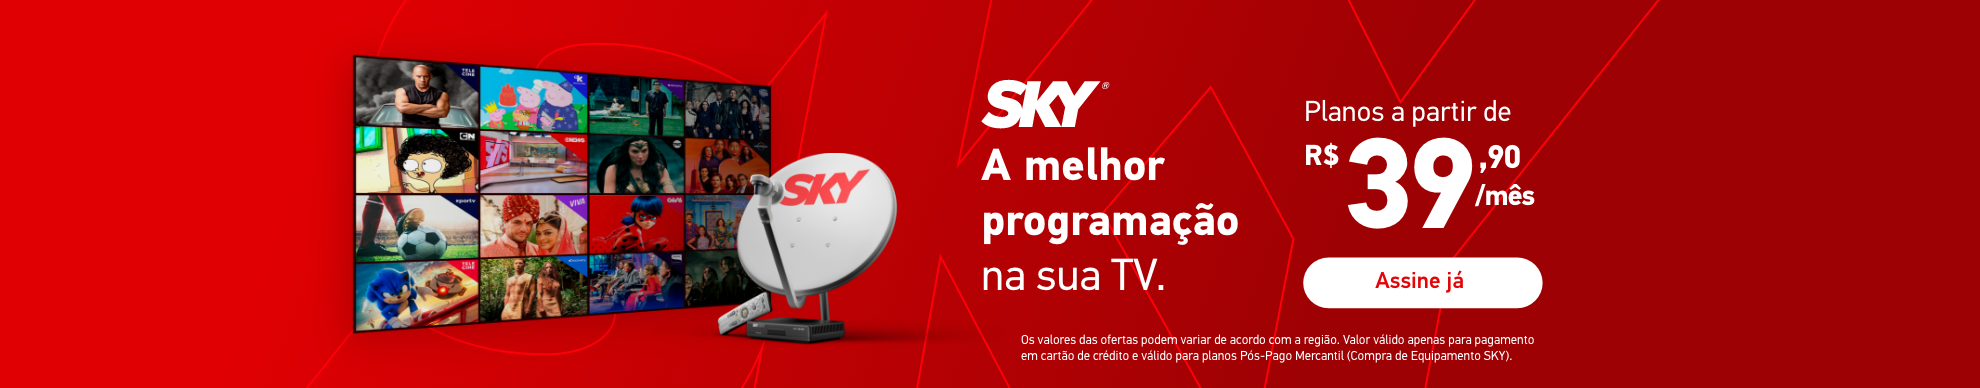 Banner SKY Amelhor programação na sua TV. A partir de R$ 39,90